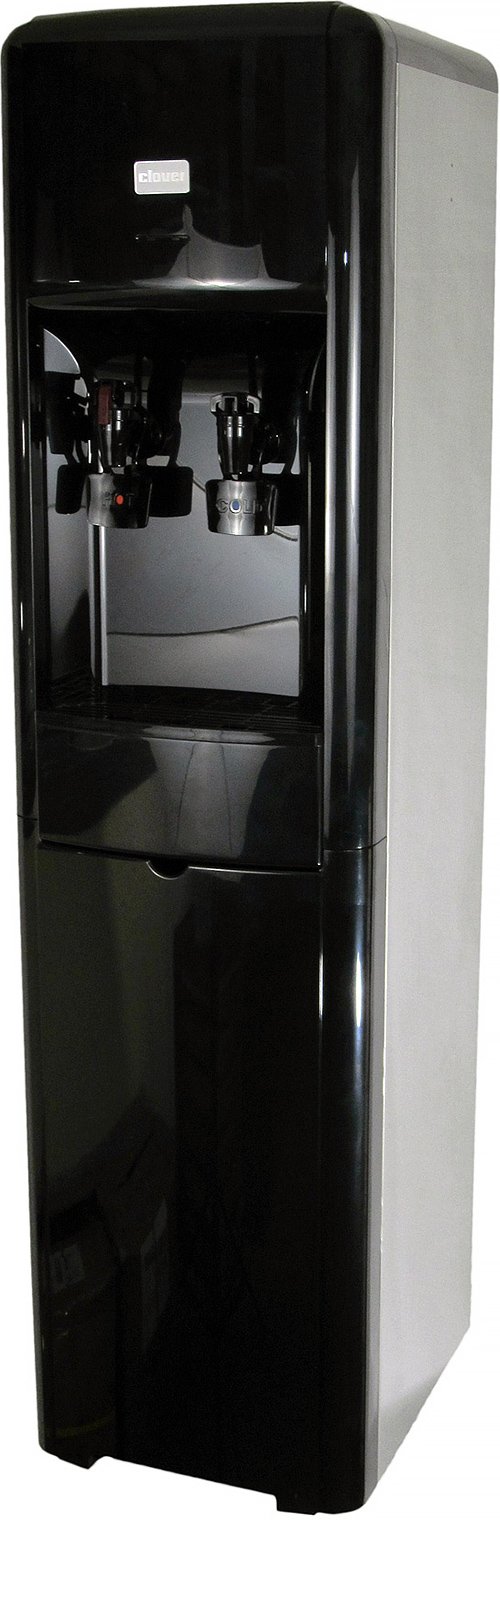 Clover D16A-B Water Dispenser -Hot and Cold Bottleless, High Capacity Dispenser